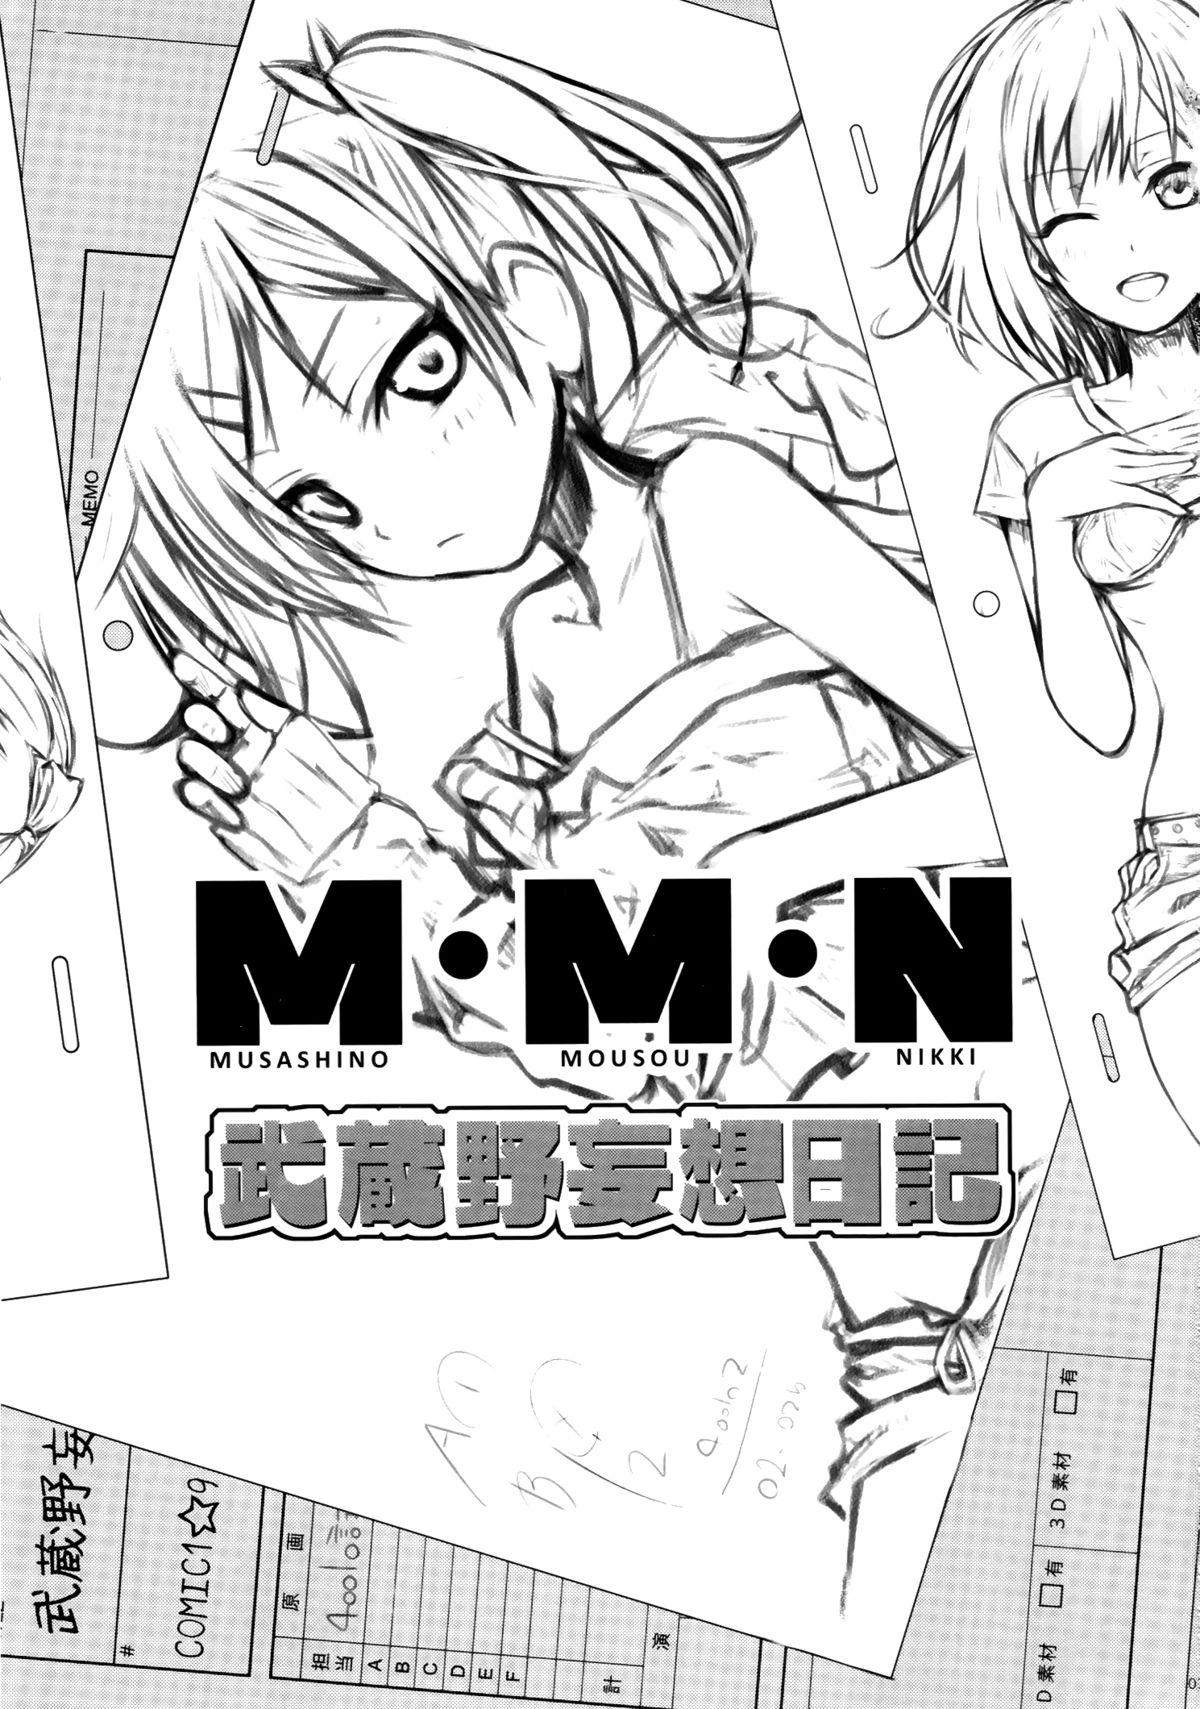 Skinny Musashino Mousou Nikki - Shirobako Transexual - Page 3